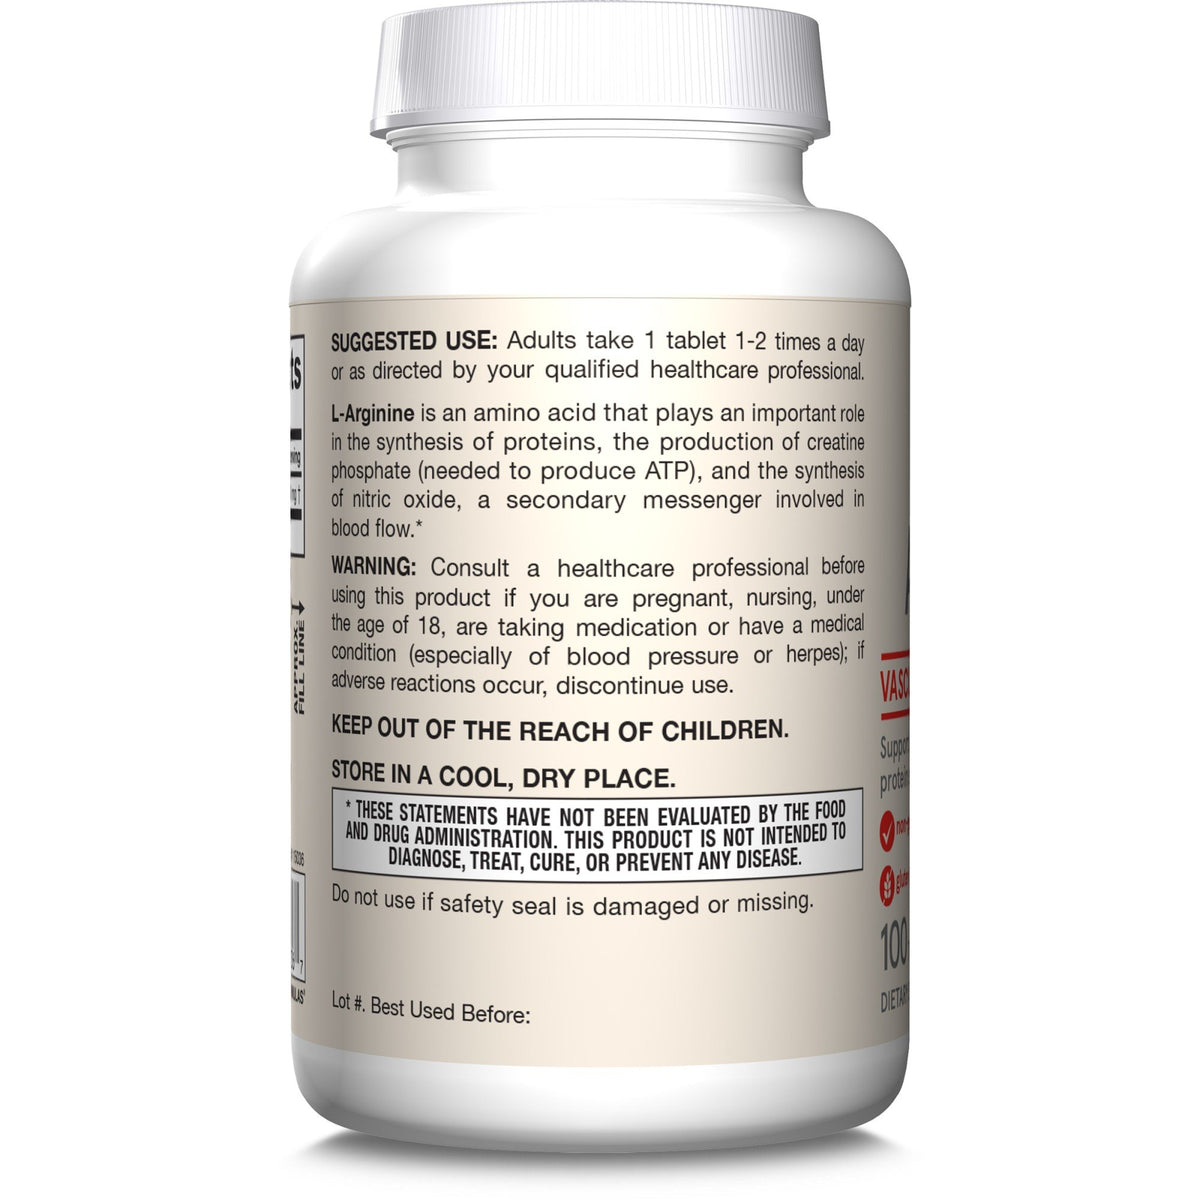 Jarrow Formulas L-Arginine 1000 mg 100 Tablet